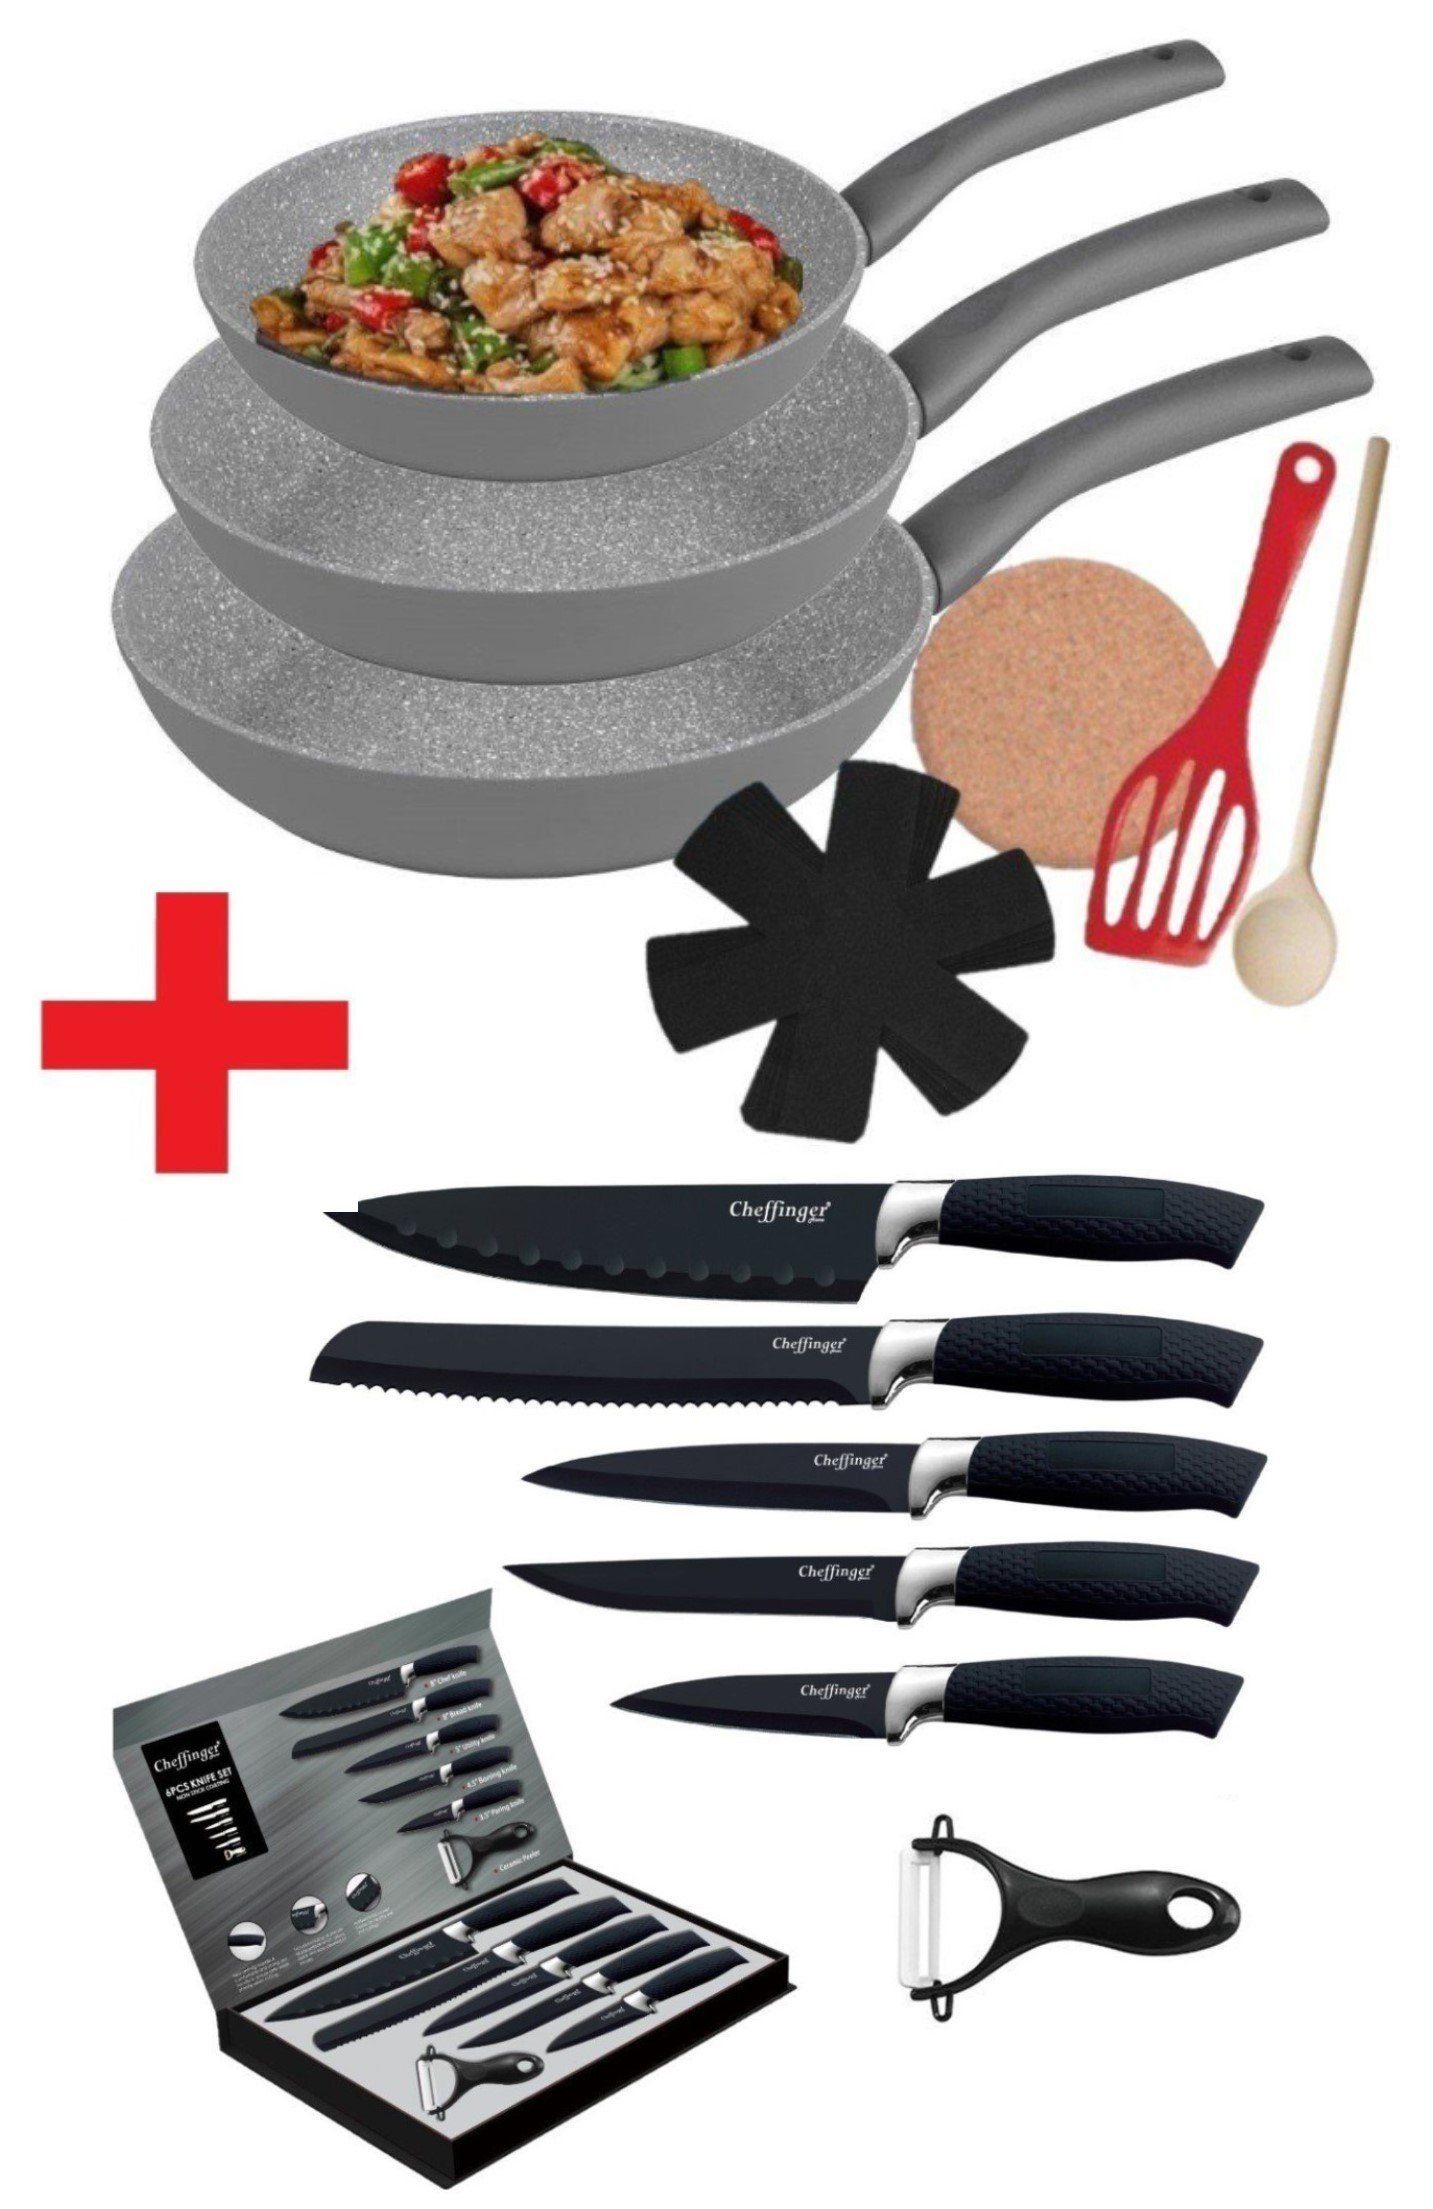 KESSMANN Pfannen-Set Induktion Bratpfannen 9tlg + Küchen Messerset 6tlg -KOMPLETT SET-, Aluminium (Set, 15-tlg., Inkl 1 Pfannenwender + 1 Untersetzer + 1 Löffel + 3 Einlagen Antihaft), Küchen Messer Set Messerblock Pfanne Pfannenset Knife grau